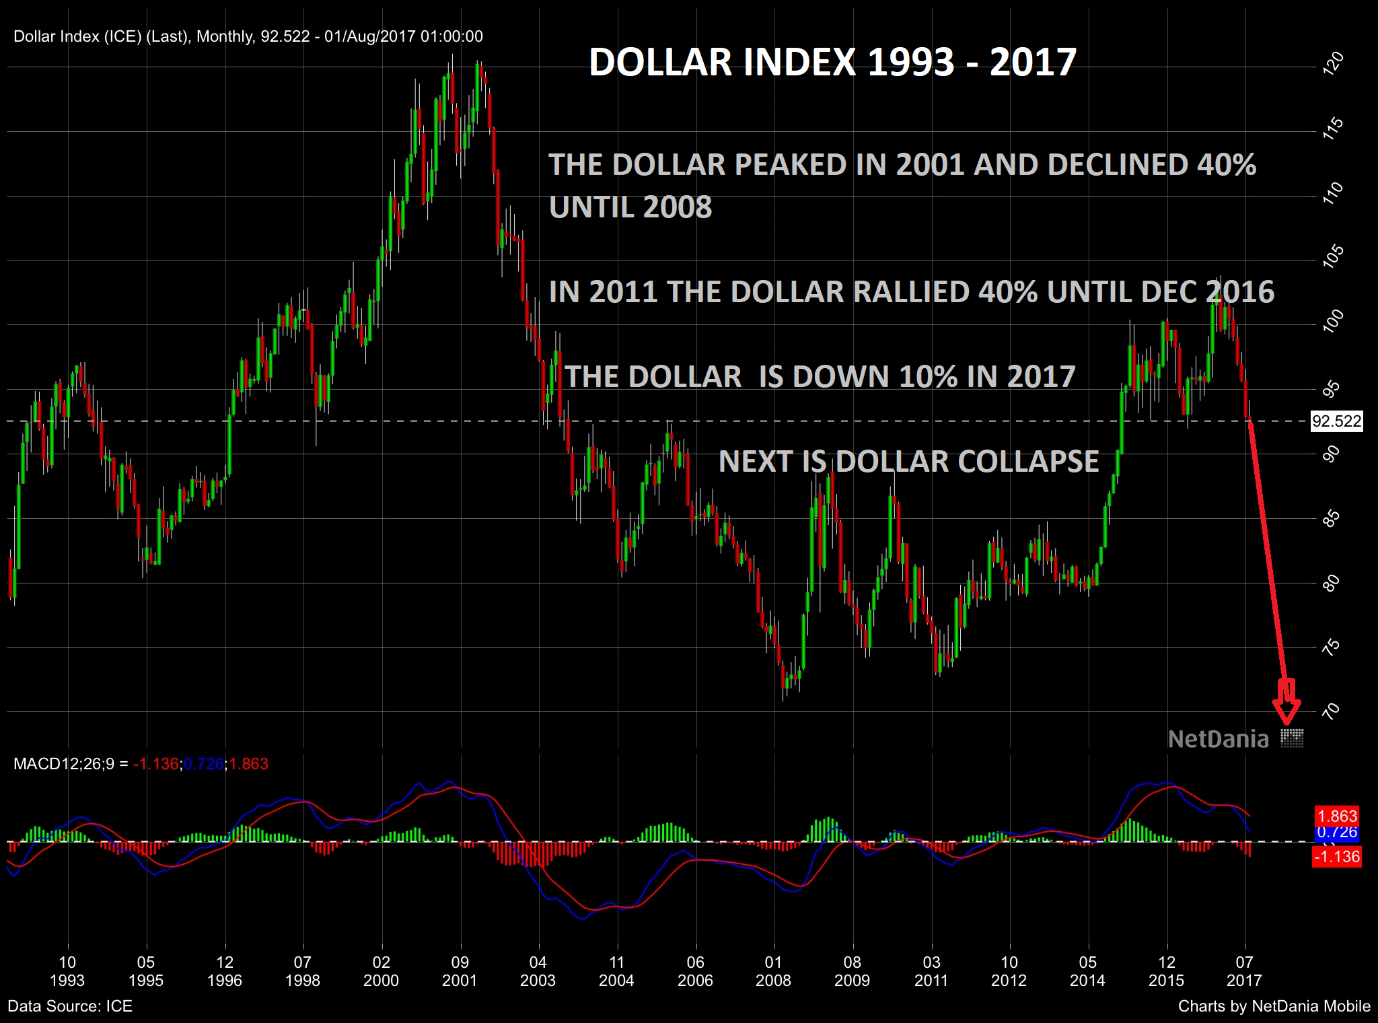 Dollars index 1993 - 2017